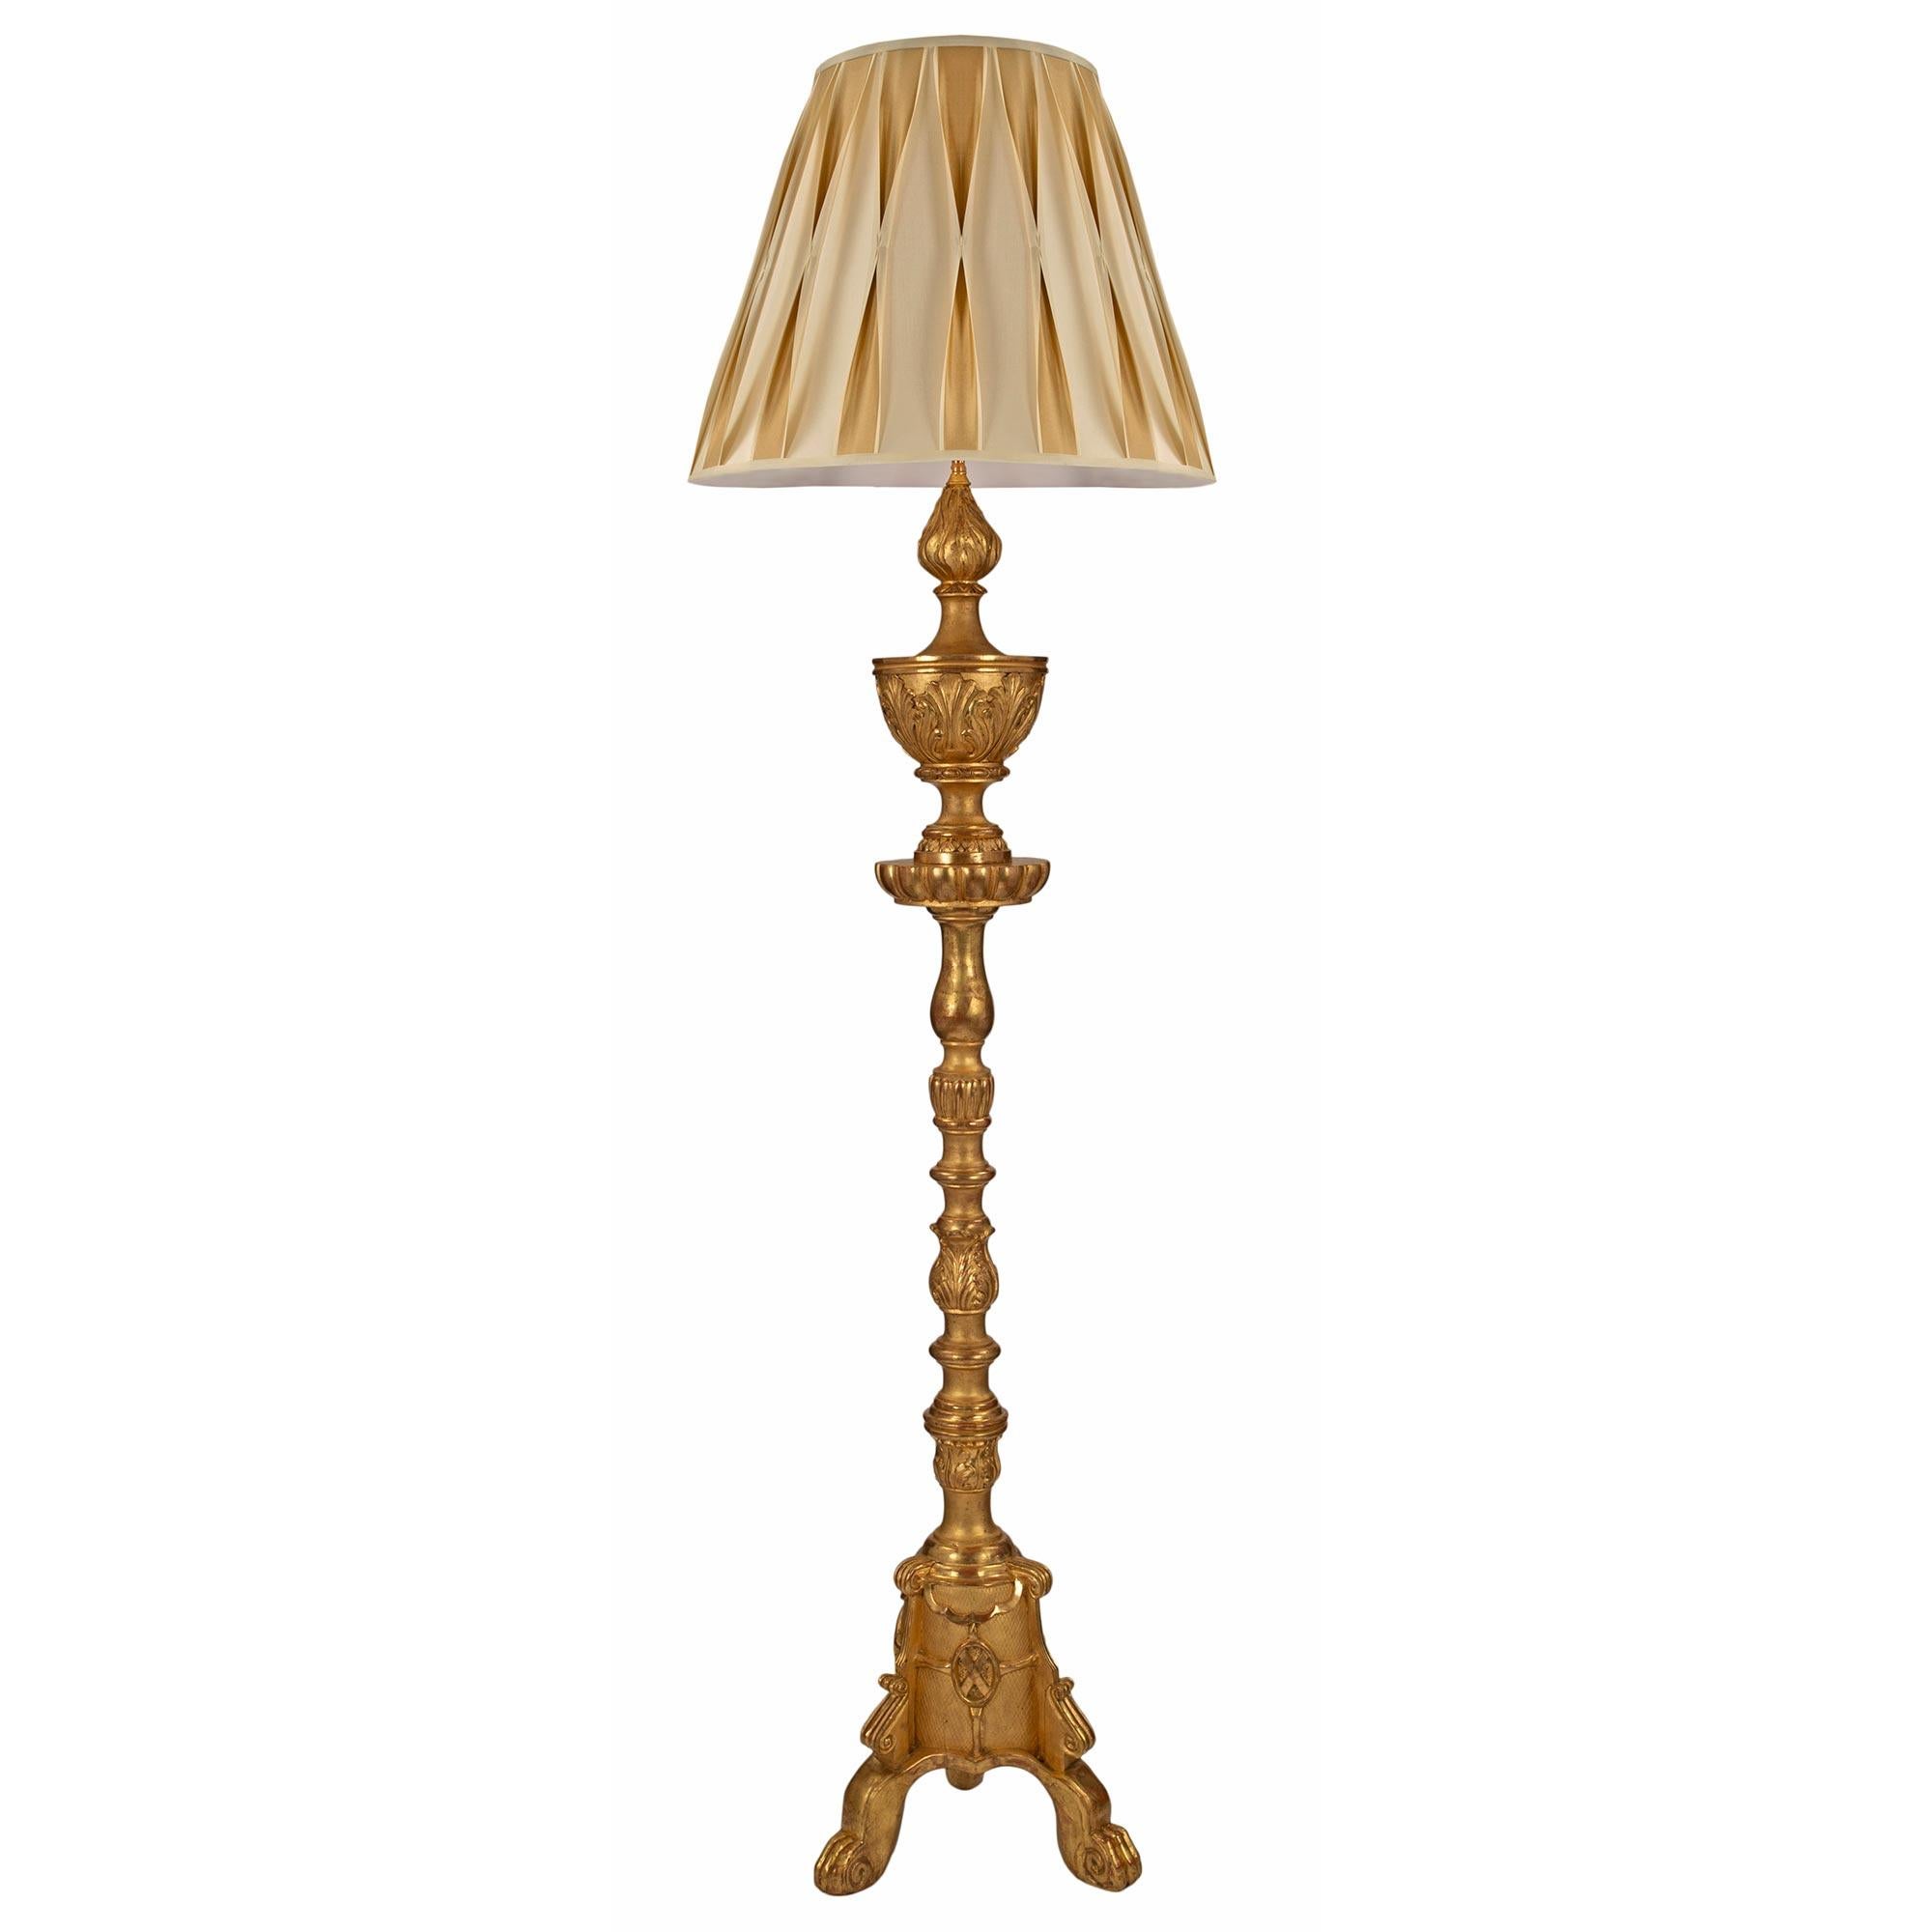 Eine sehr attraktive italienische Stehlampe im Louis XV/XVI-Stil aus Goldholz aus dem frühen 19. Die Lampe steht auf einem dreibeinigen Sockel mit Cabriole-Beinen unter einer gesprenkelten Schriftrolle. Die Säule hat ein zentrales Wappen mit einem